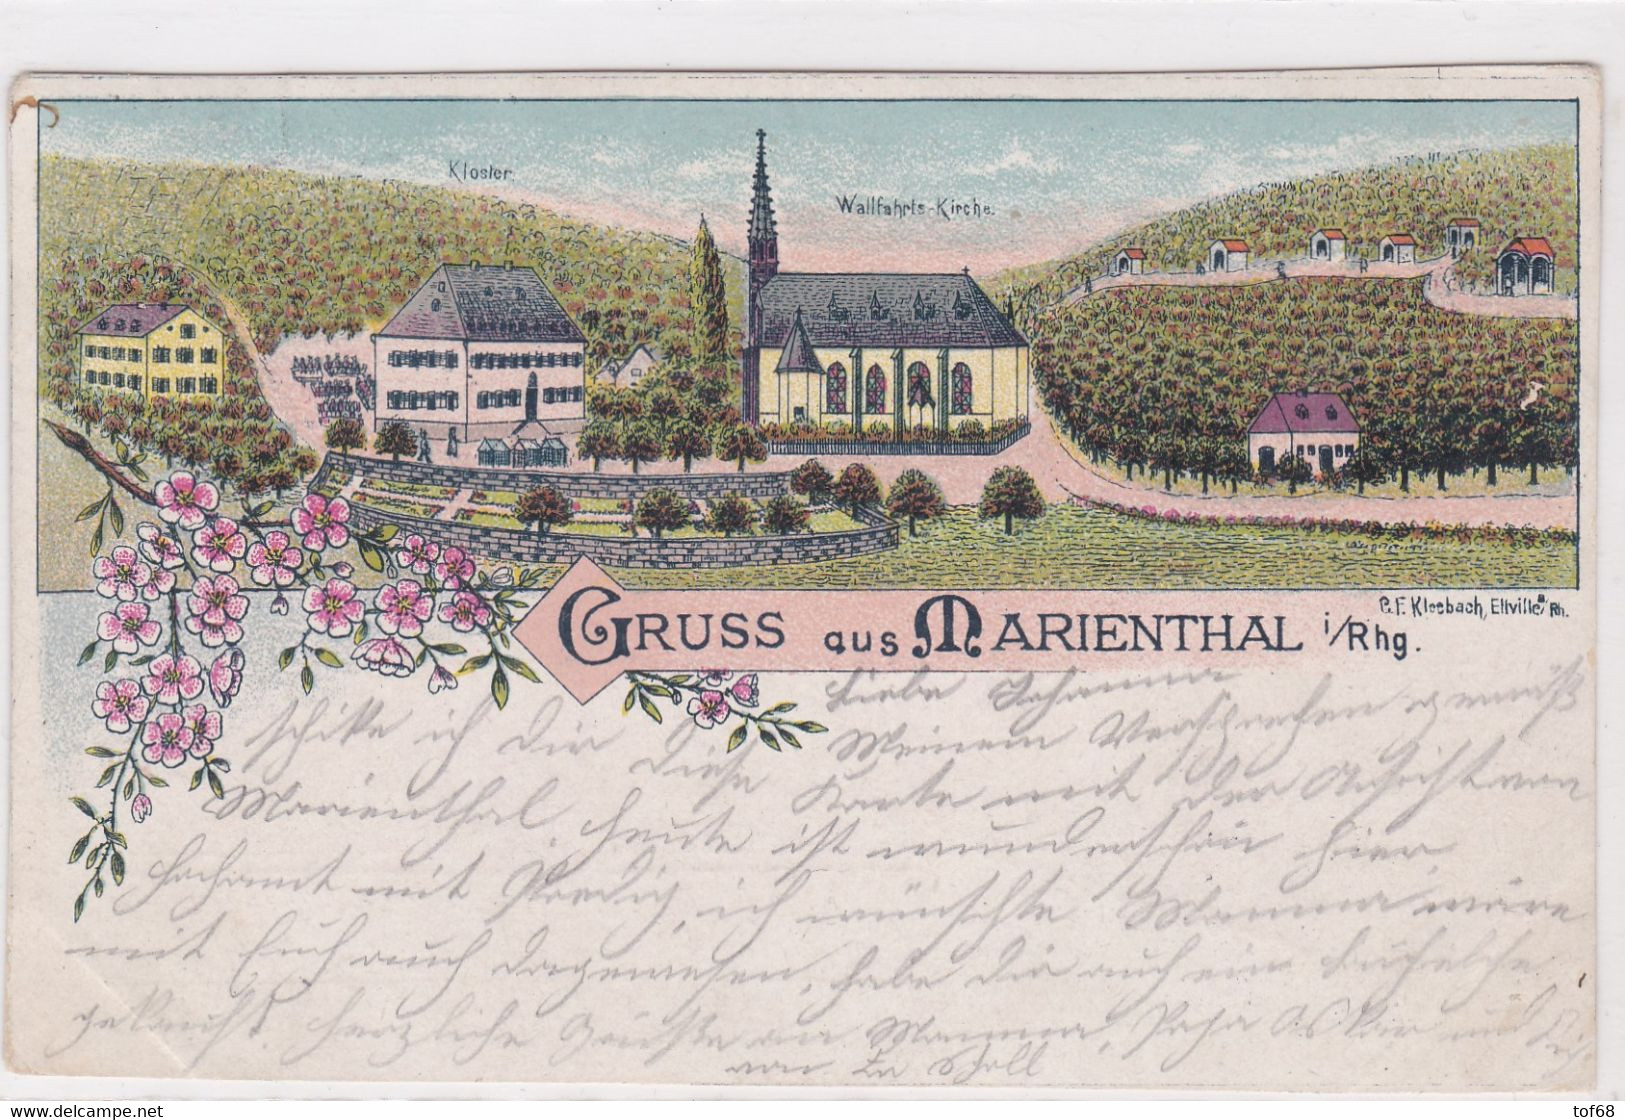 Gruss Aus Marienthal Rheingau 1897 - Rheingau